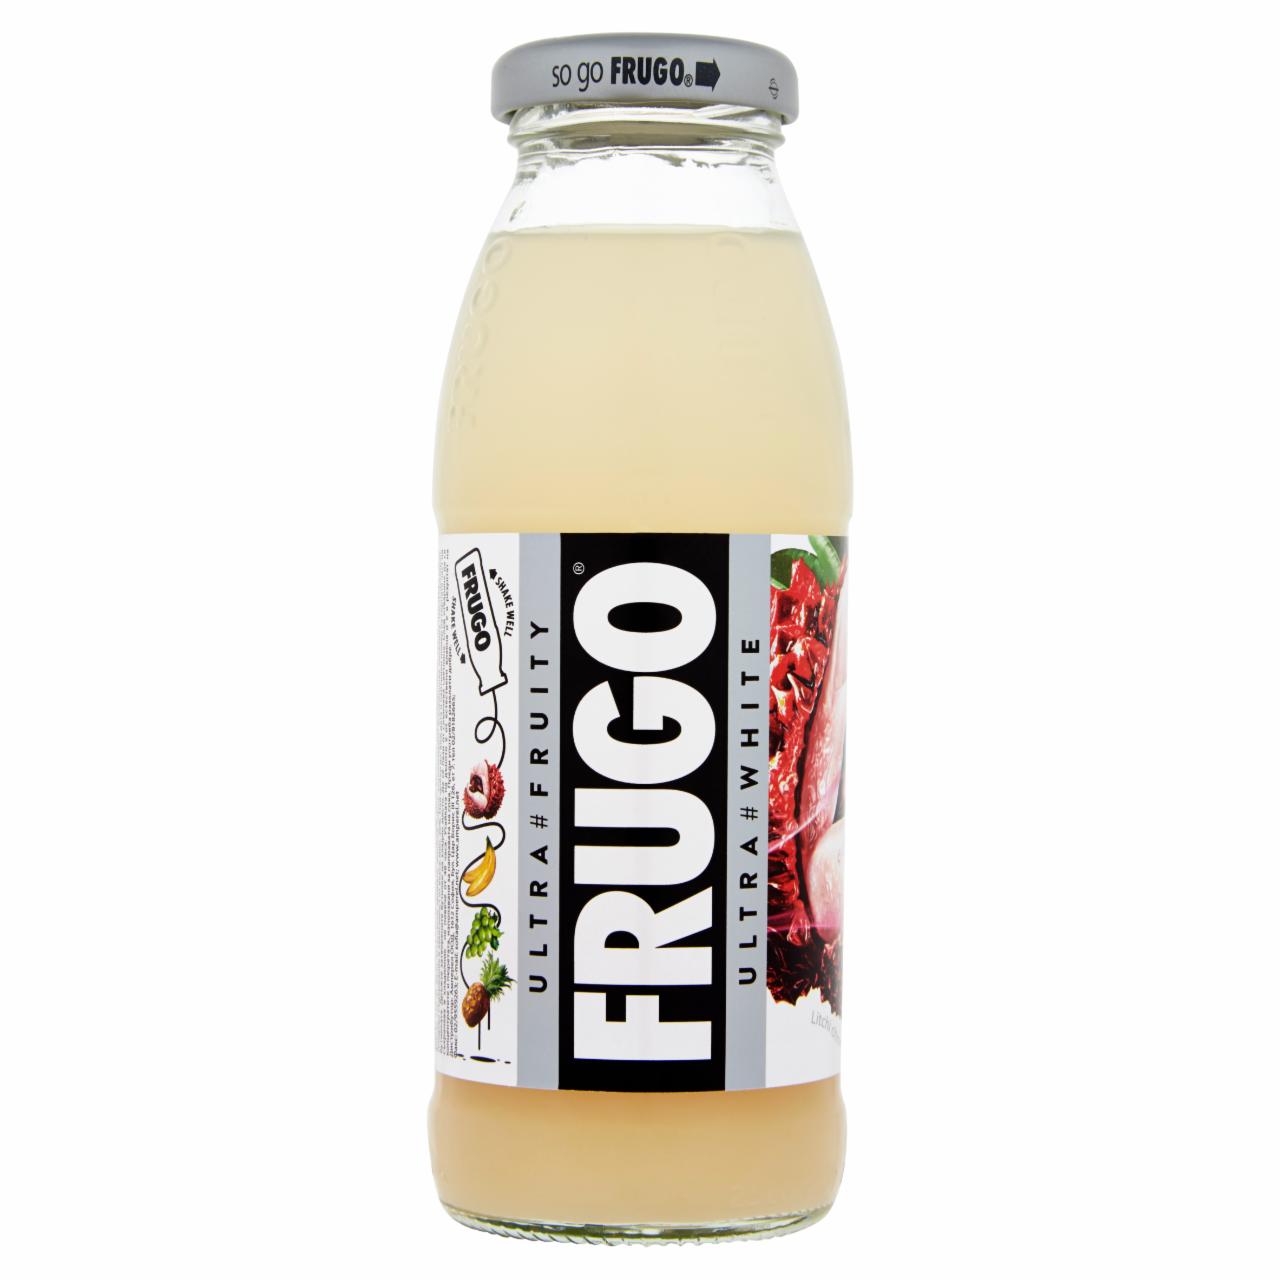 Képek - Frugo White szénsavmentes gyümölcsital 250 ml